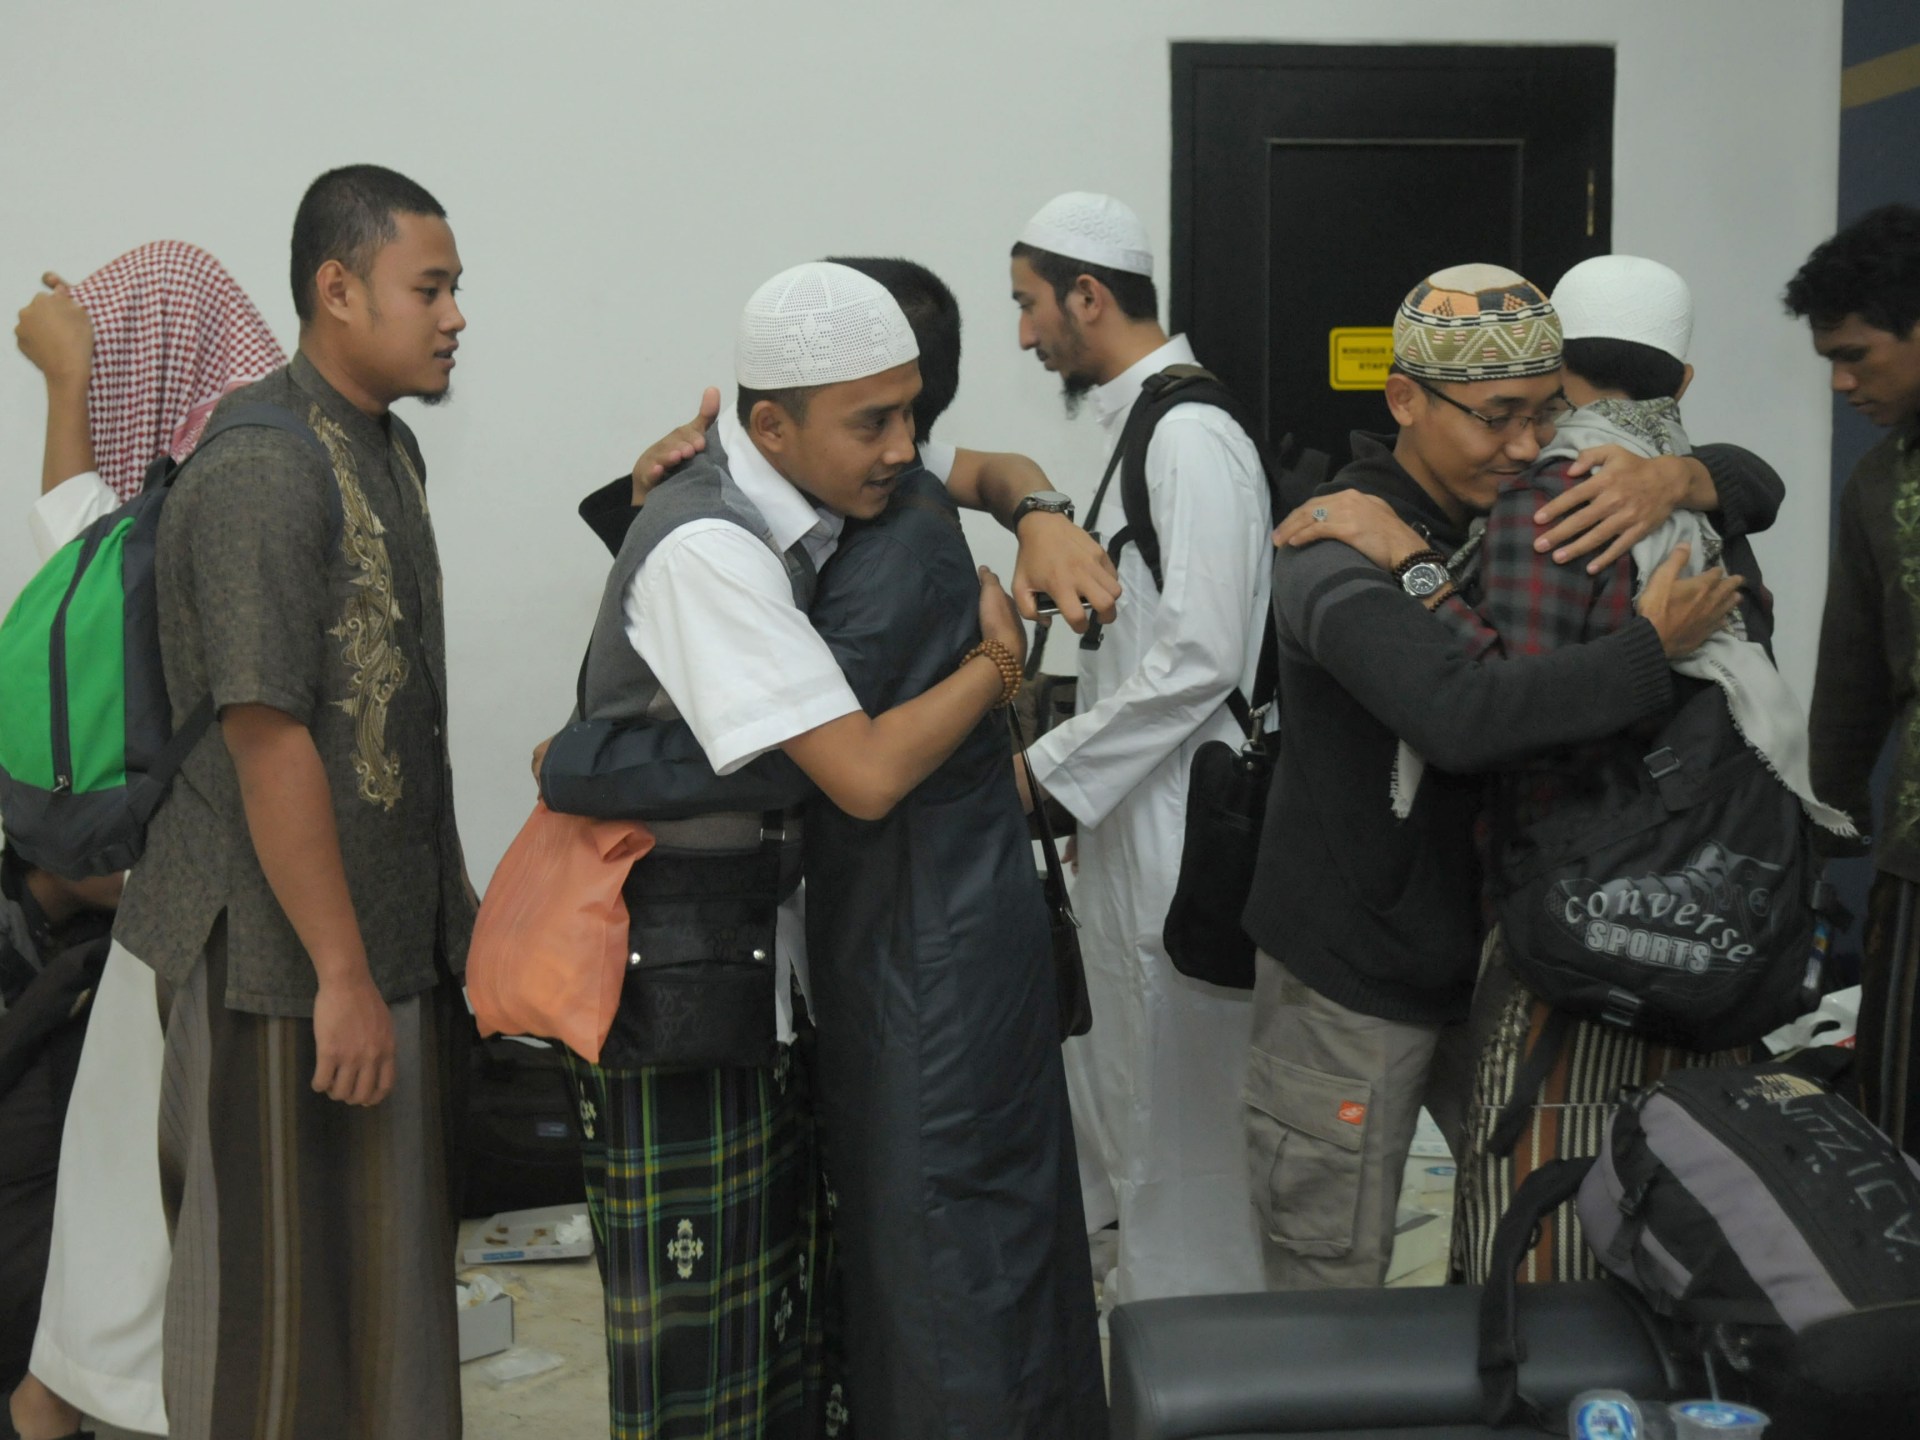 العرب الحضارمة في إندونيسيا.. كيف أثروا وتأثروا؟ | البرامج – البوكس نيوز